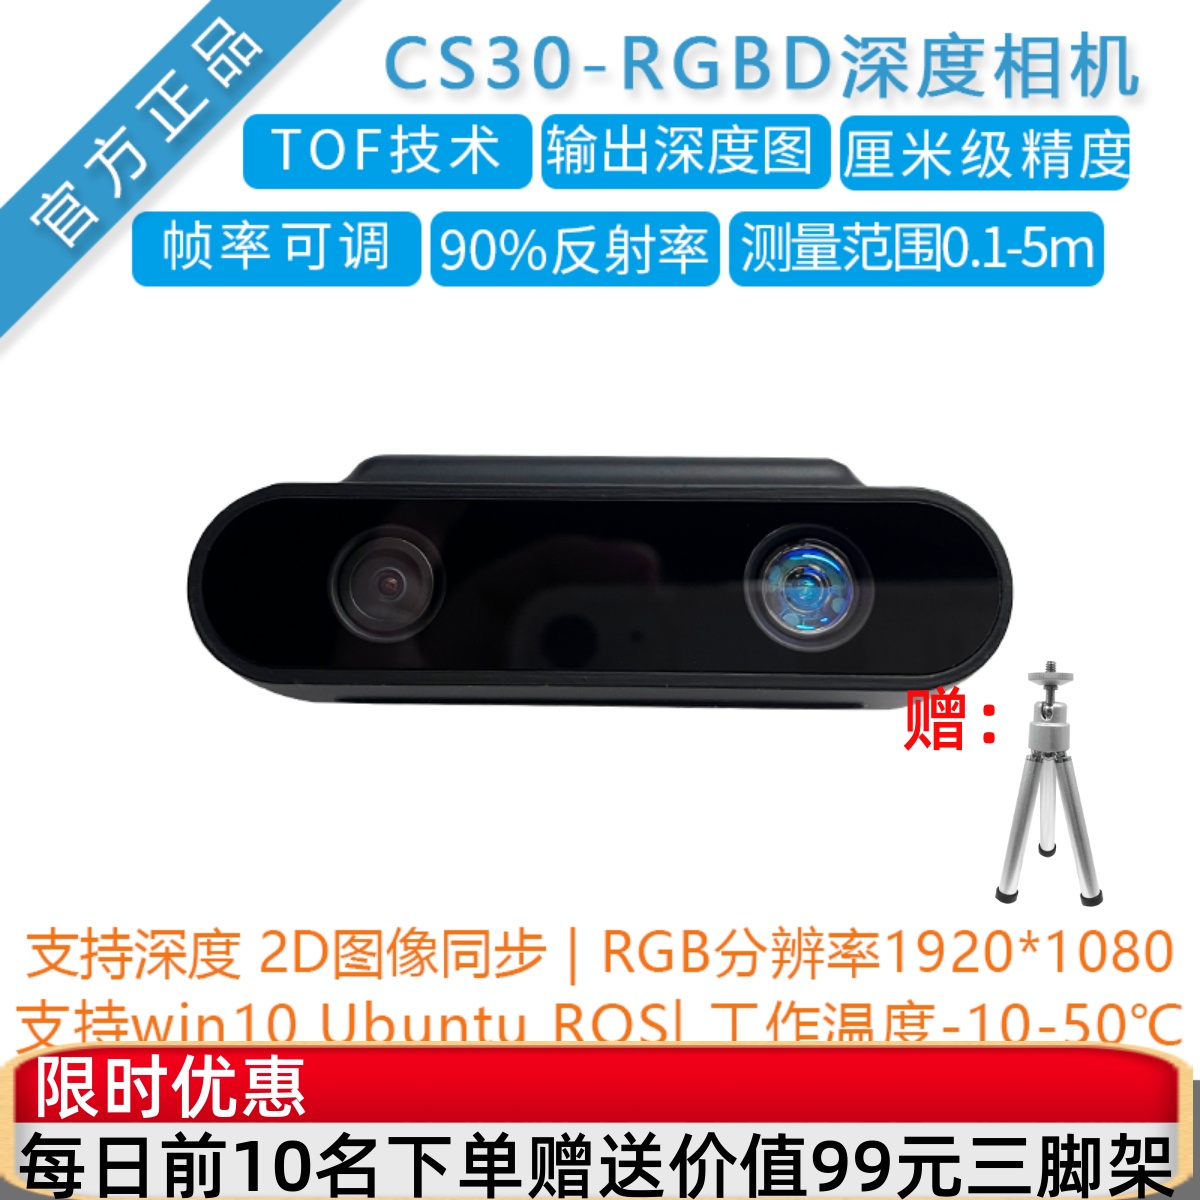 [风火轮 CS30]双目深度相机 RGB图像ROS摄像头代Intel realsense